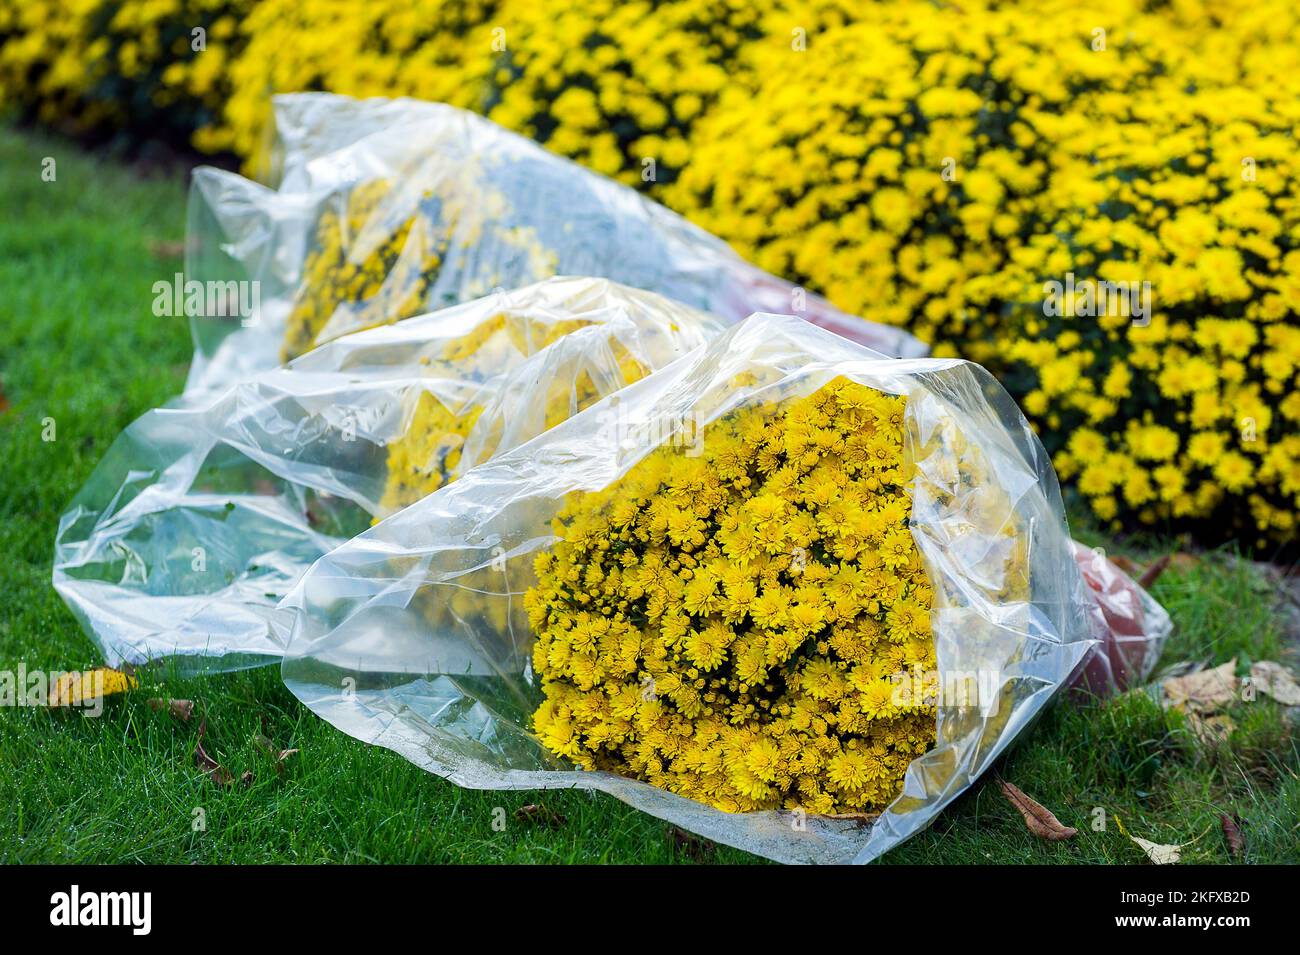 Toussaint - chrysanthemes en bouquet pour deposer sur les tombes en souvenir des morts | All Saints day - chrysanthemum da posare sulle tombe Foto Stock